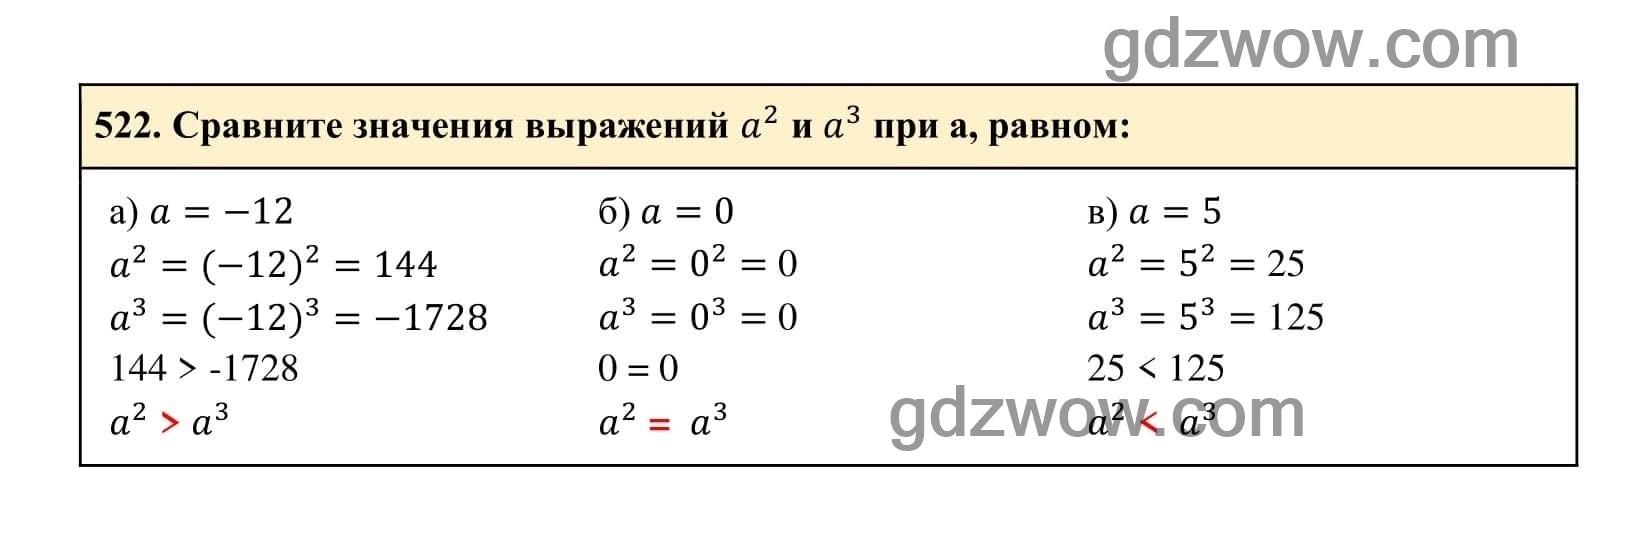 Упражнение 522 - ГДЗ по Алгебре 7 класс Учебник Макарычев (решебник) - GDZwow